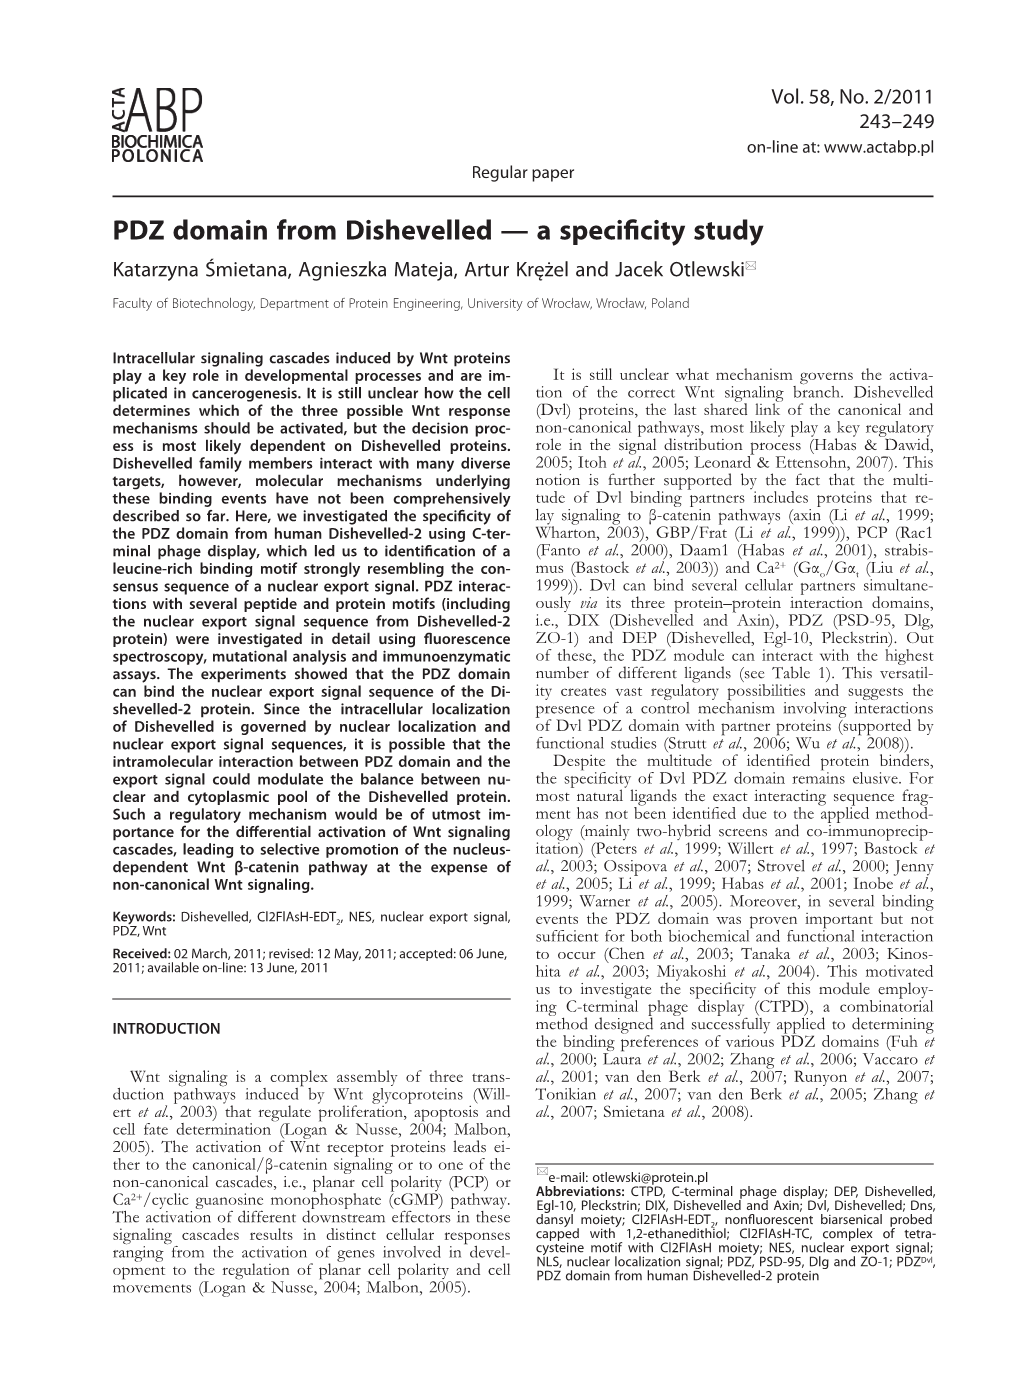 PDZ Domain from Dishevelled — a Specificity Study Katarzyna Śmietana, Agnieszka Mateja, Artur Krężel and Jacek Otlewski*